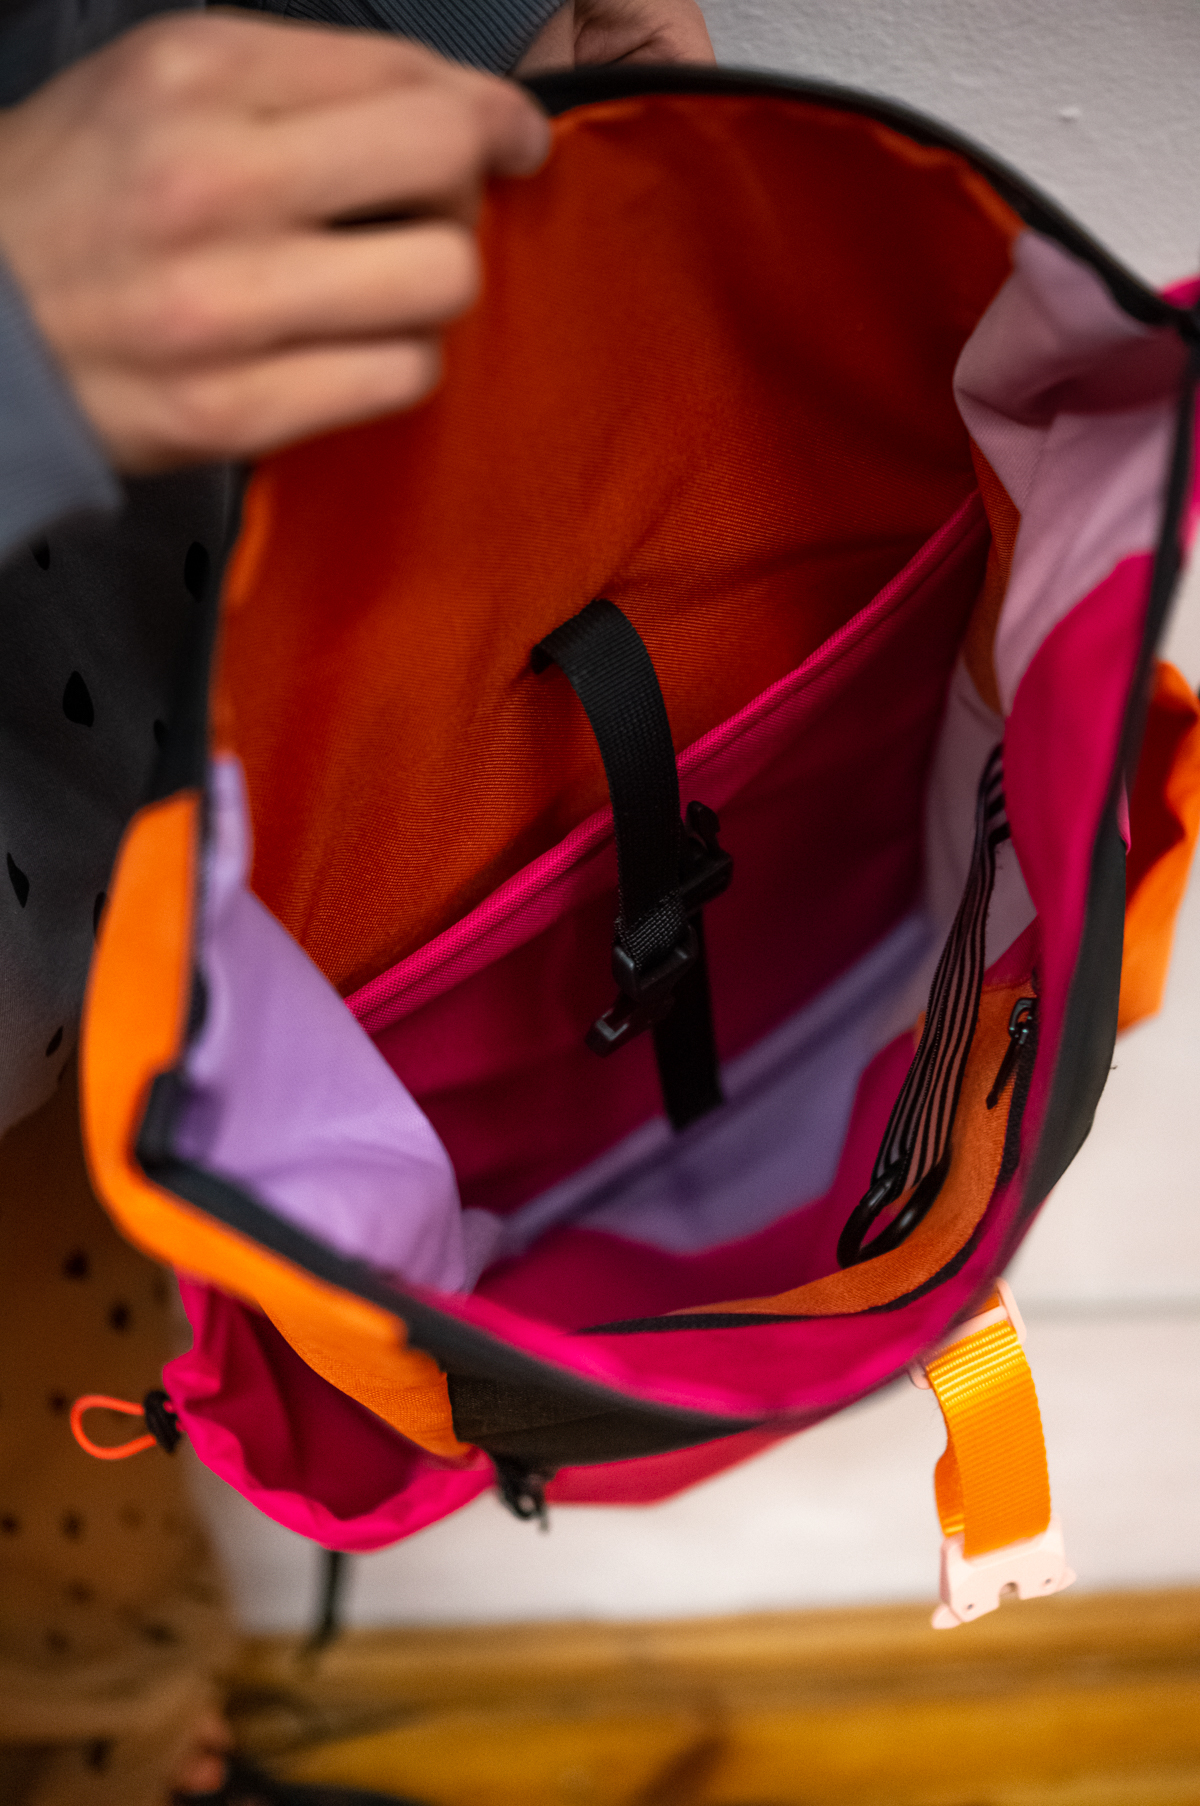 plecak RÓŻOWA POMARAŃCZA. Stylowy czarno różowo pomarańczowy damski plecak miejski. Wodoodporny. Wykonany ręcznie z dbałością o szczegóły. Handmade.